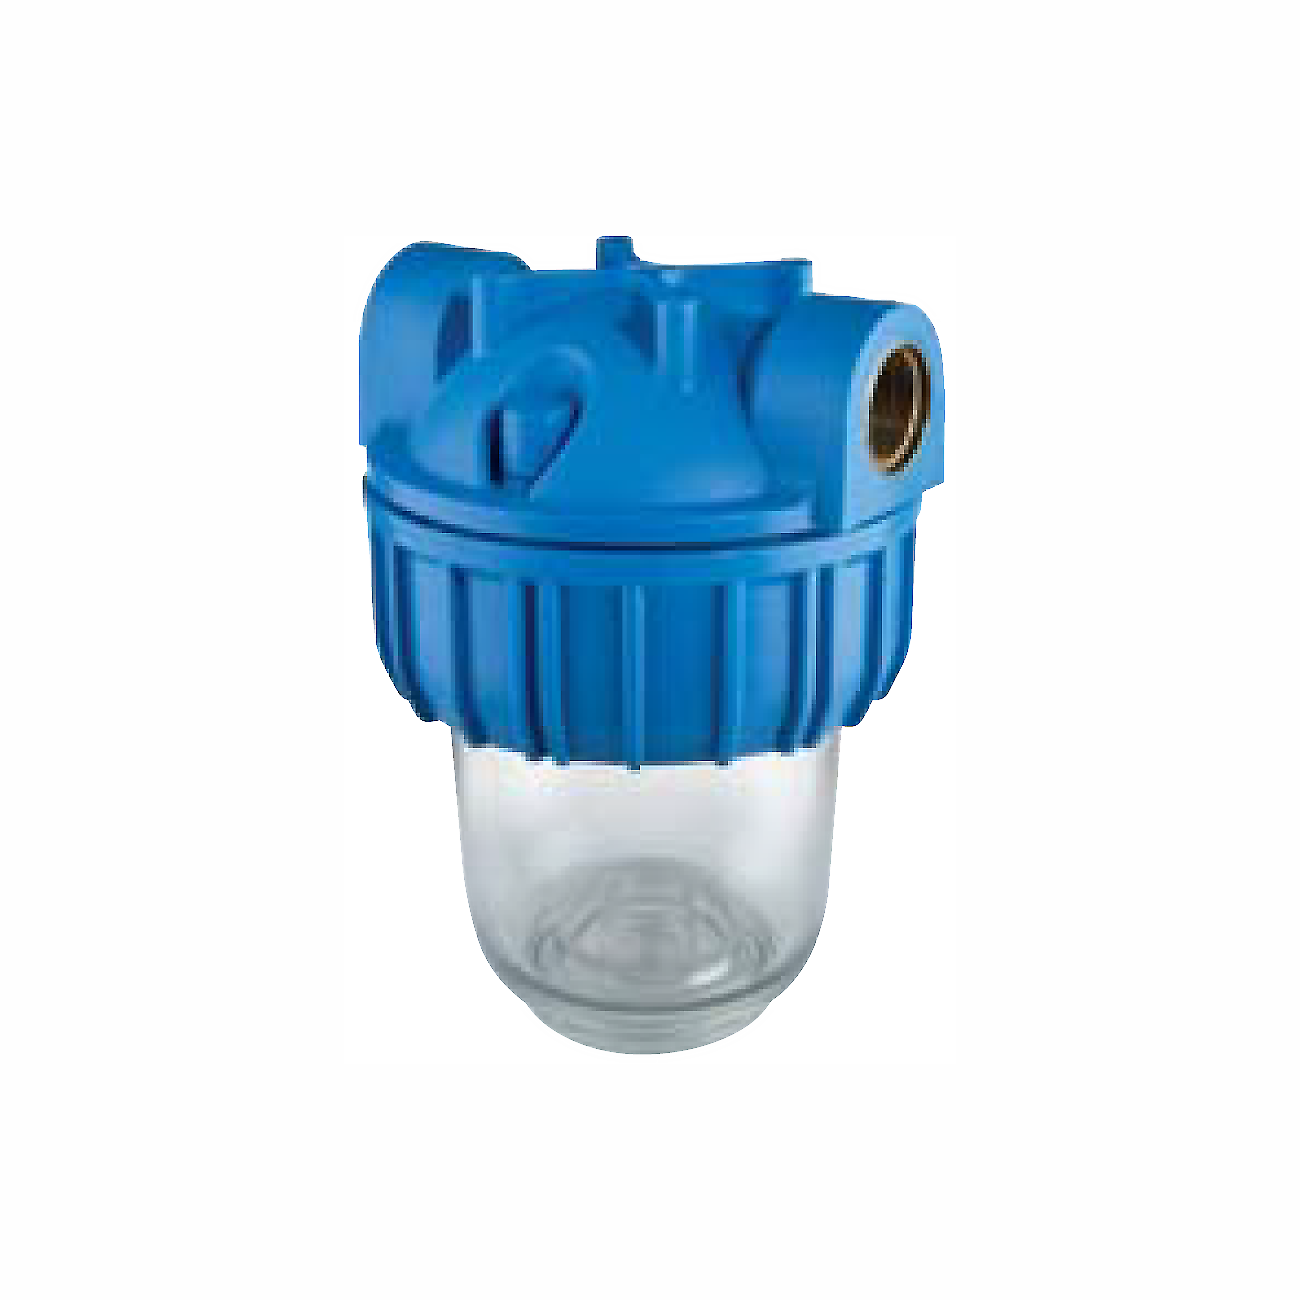 Фильтр для очистки водопроводной воды. Магистральный фильтр ITA-21-1, f20121-1p. Магистральный фильтр ITA-21-3/4 (f20121-3/4). Фильтр магистральный UNIPUMP CFC-5k. Колба UNIPUMP 10 CFC-10k.